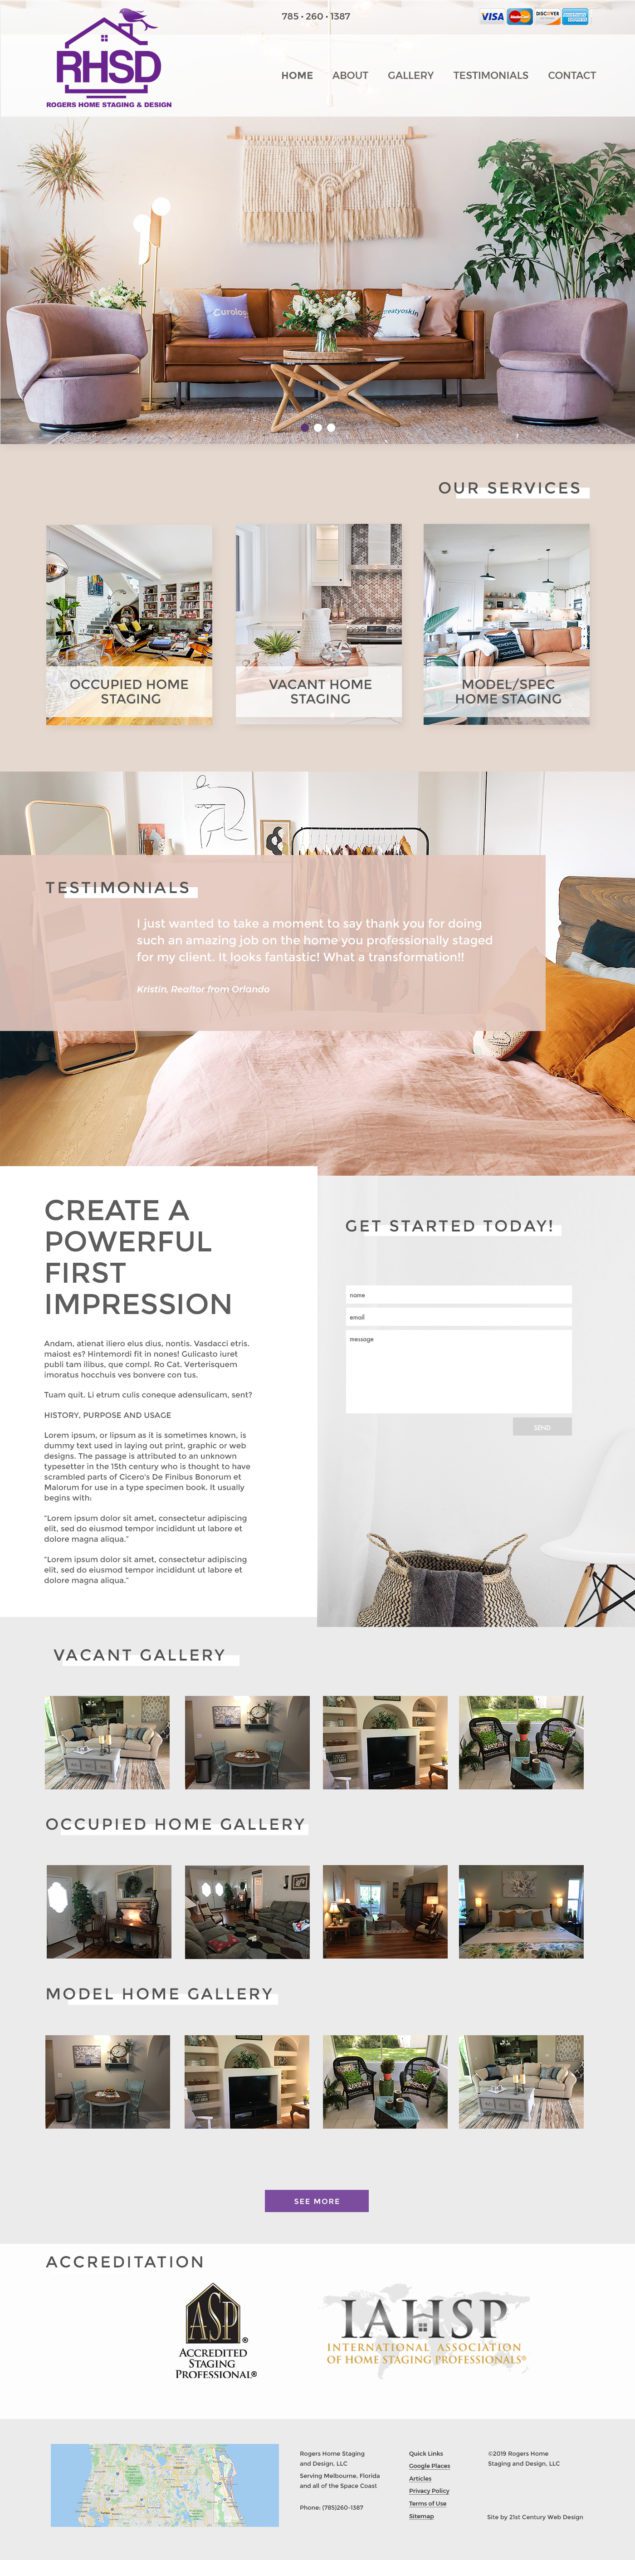 Interior Design Company Custom Website Design